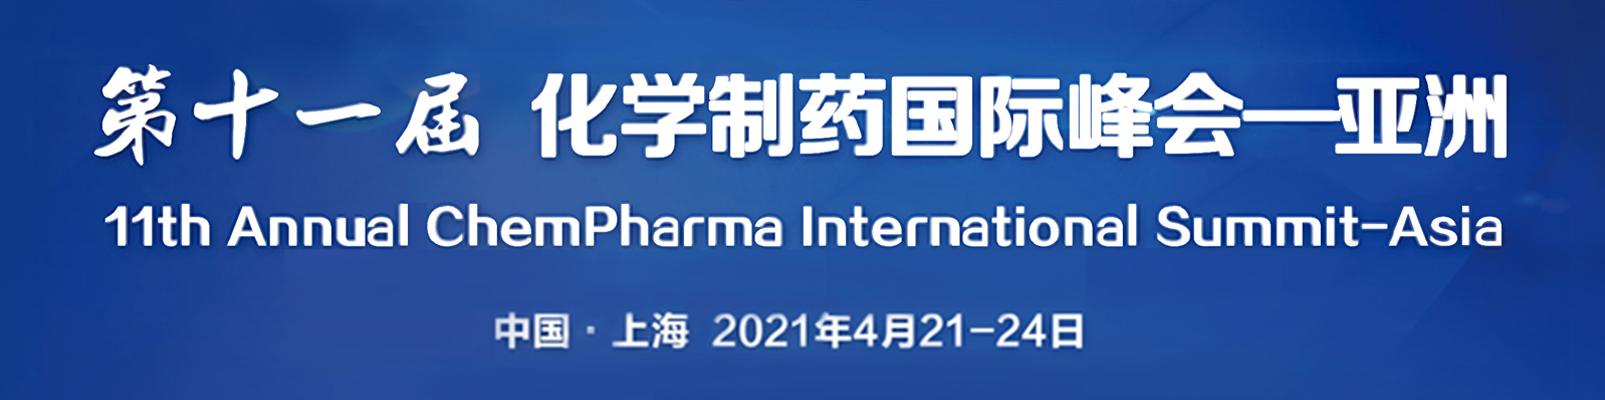 第十一屆化學制藥國際峰會-亞洲|CIS-Asia 2021